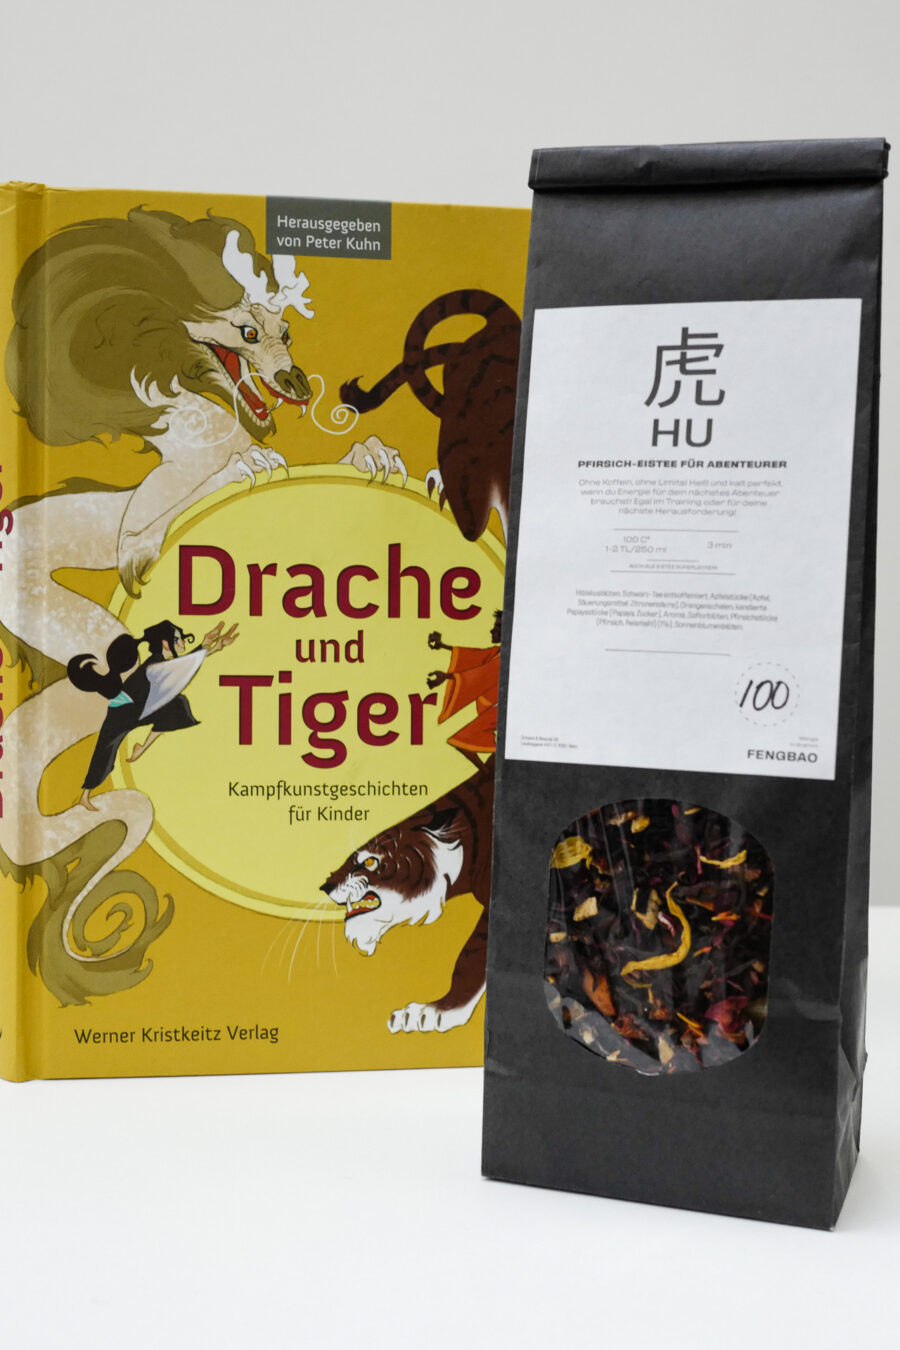 tee kinderbuch drache und tiger eistee pfirsich fengbao kung fu kampfkunst geschichten hochformat